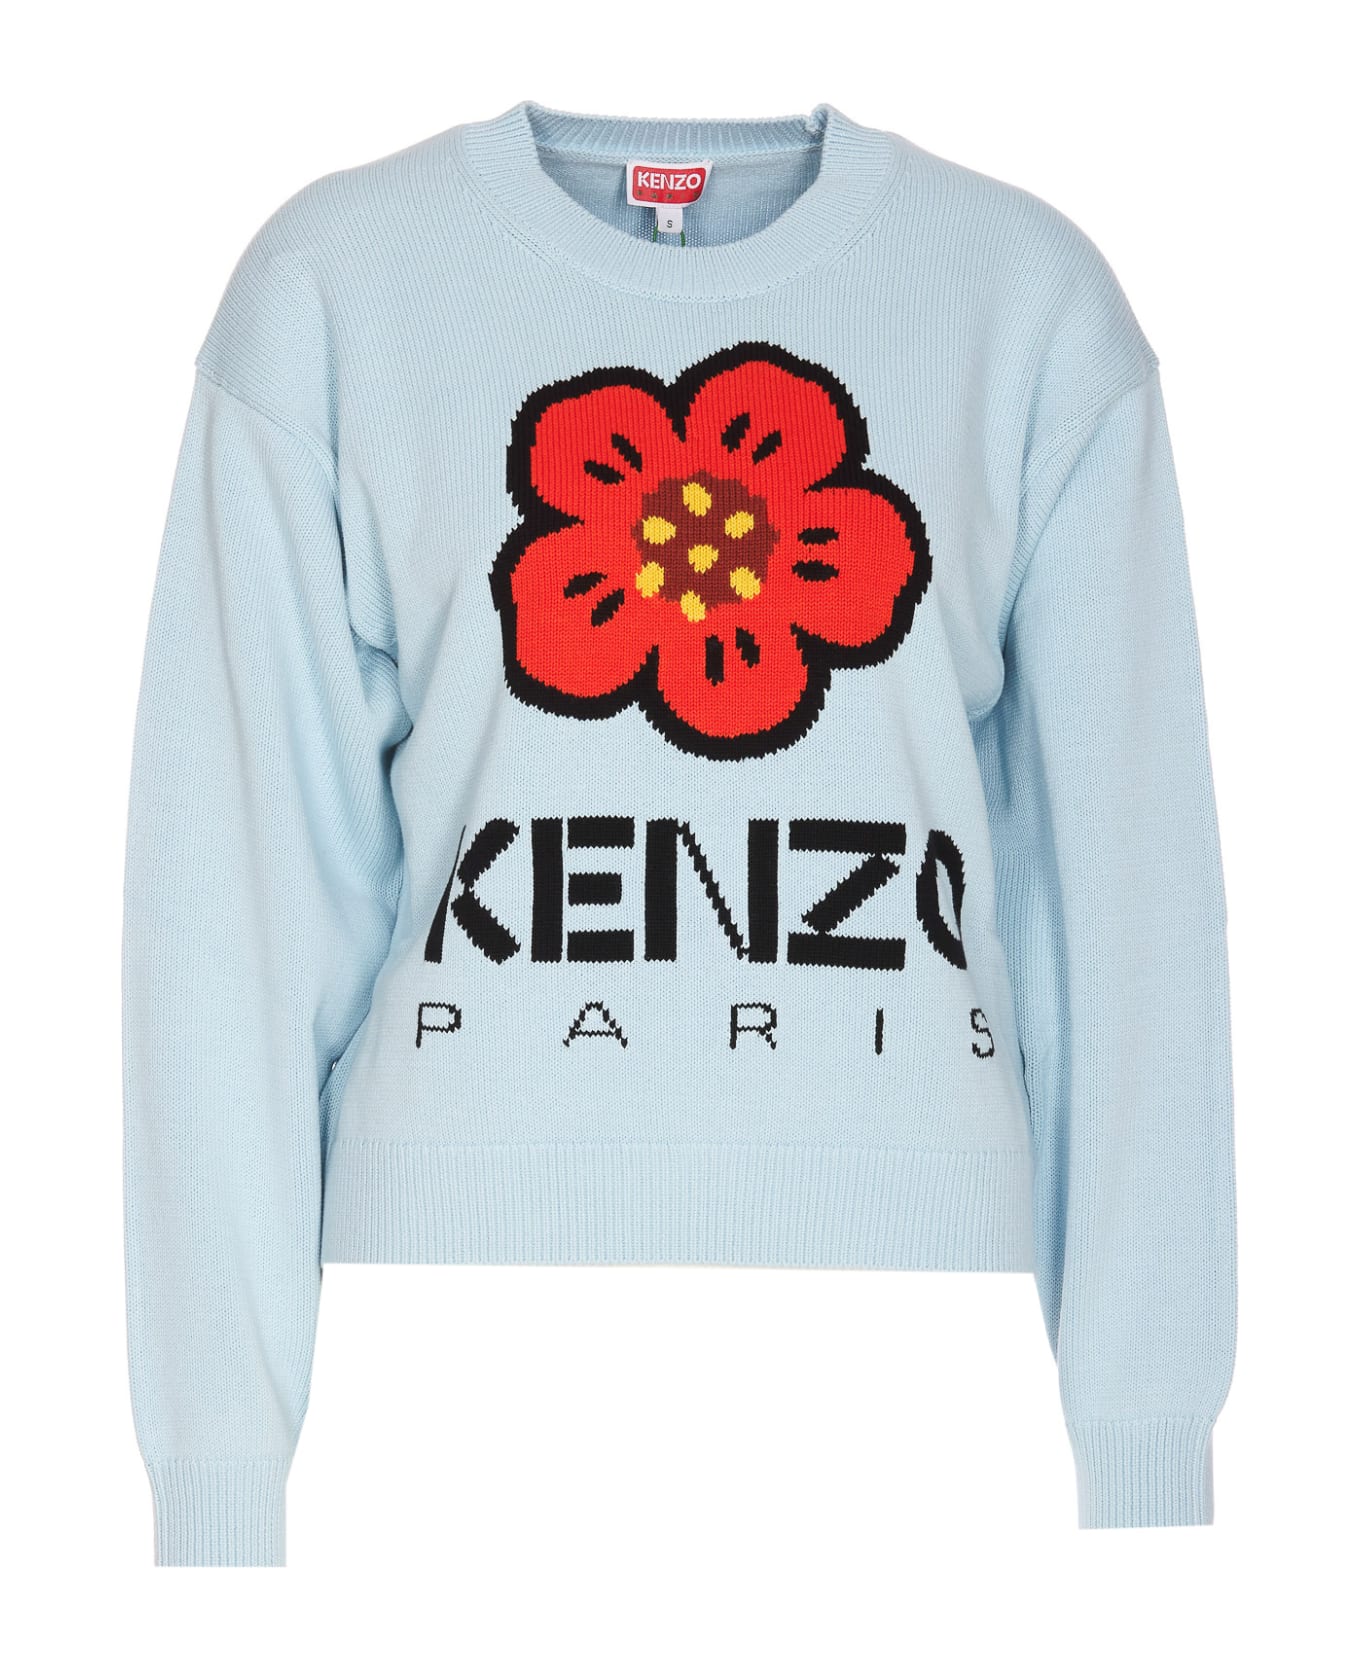 Kenzo Boke Flower Sweater - Blue ニットウェア